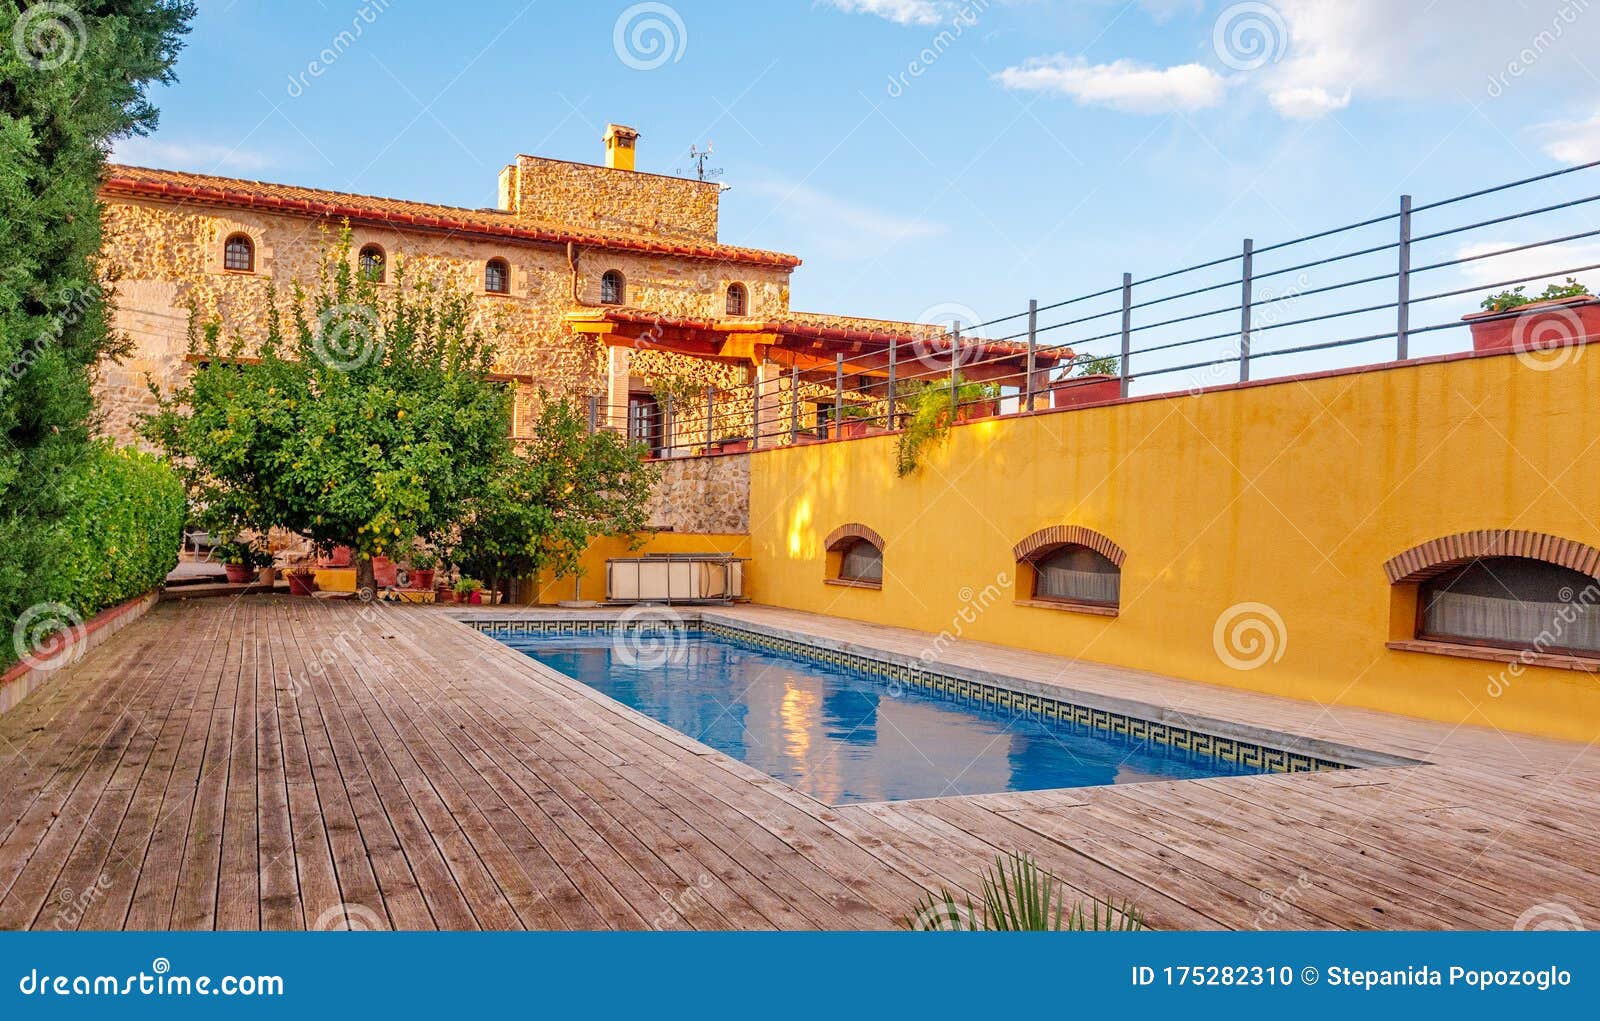 Эффектный дом в средиземноморском стиле (54 красивых дома)